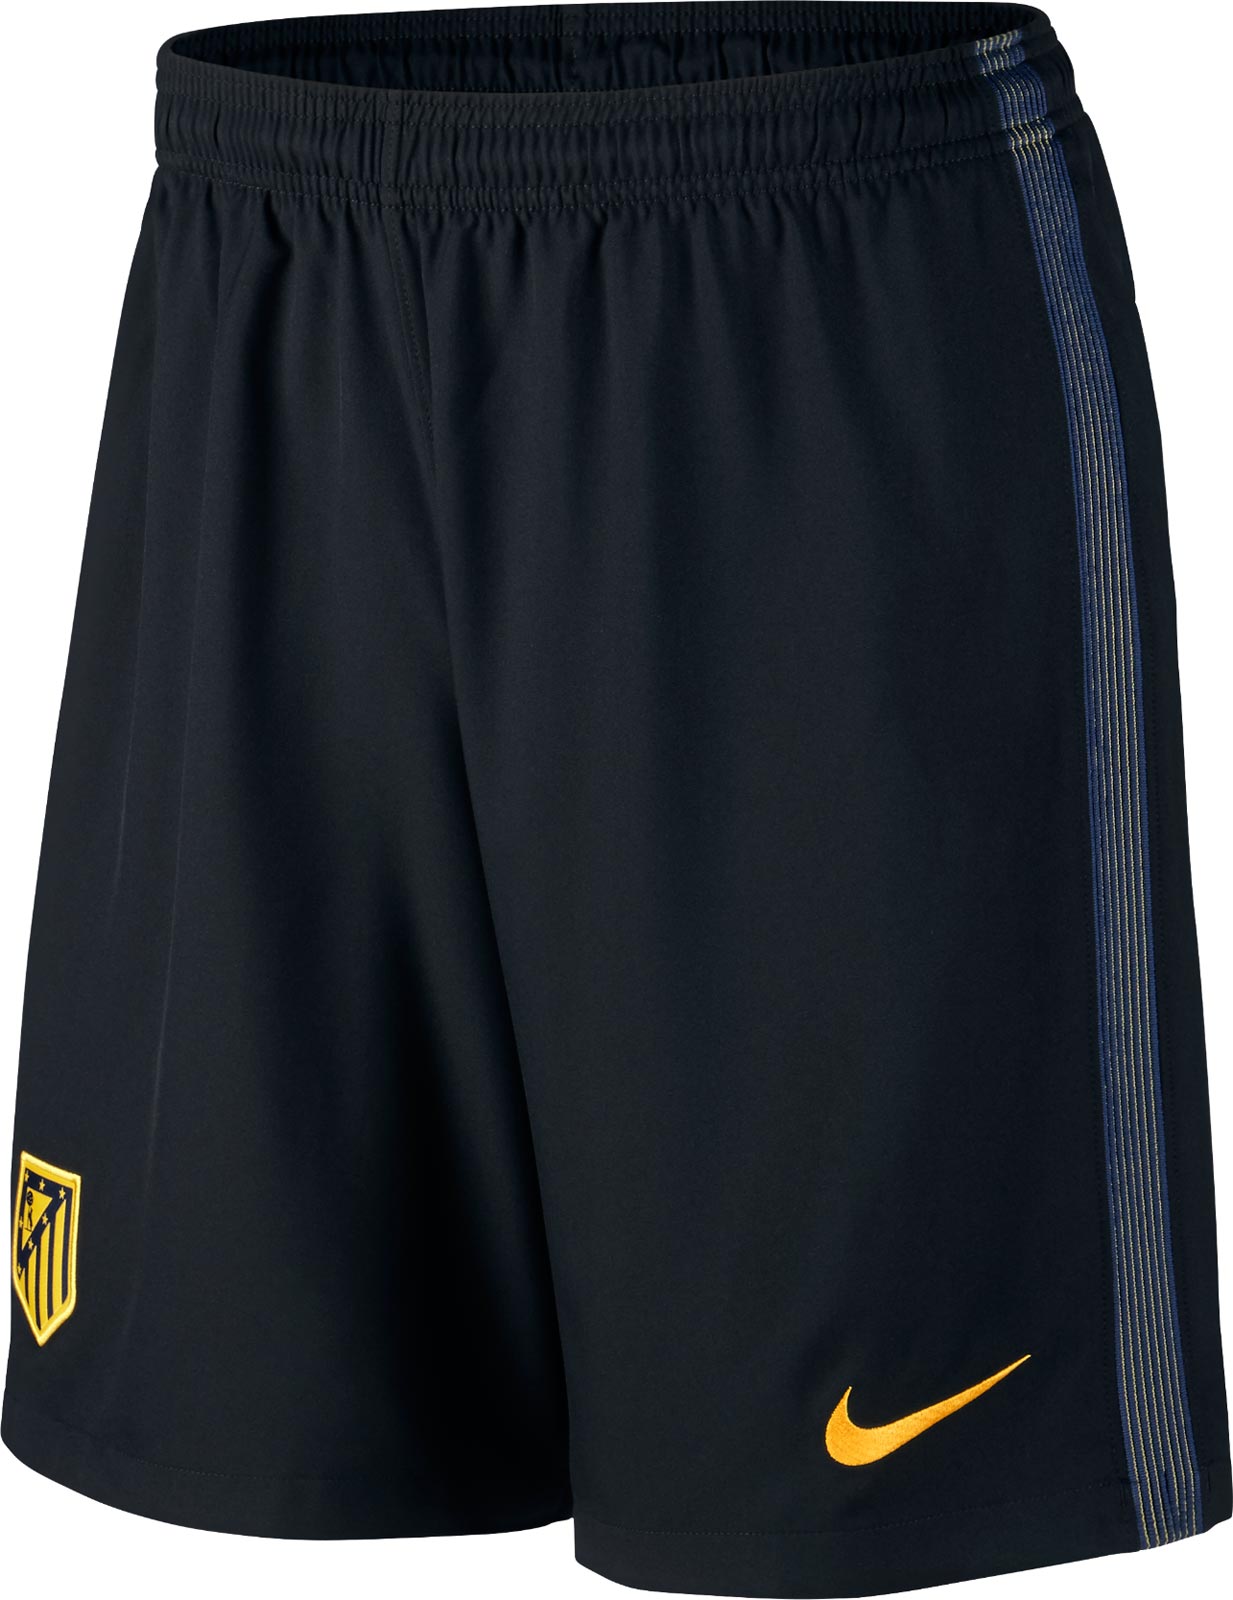 atletico-16-17-away-kit-shorts